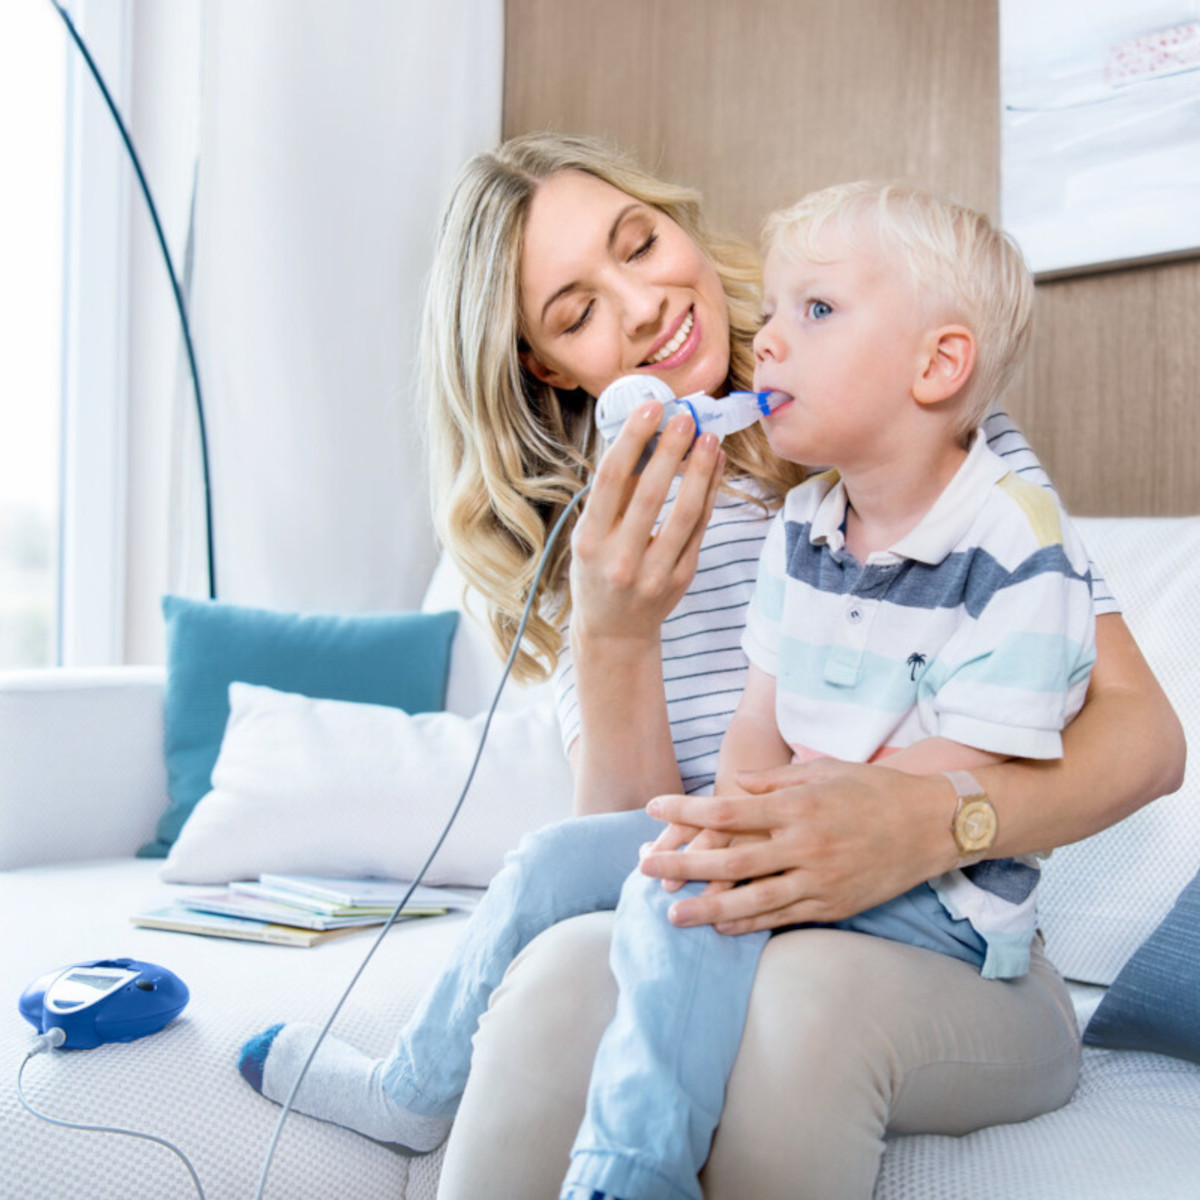 Mutter sitzt mit ihrem Kind auf dem Schoß auf der Couch und hilft ihm beim Inhalieren mit dem eFlow rapid Inhalationsgerät für Mukoviszidose